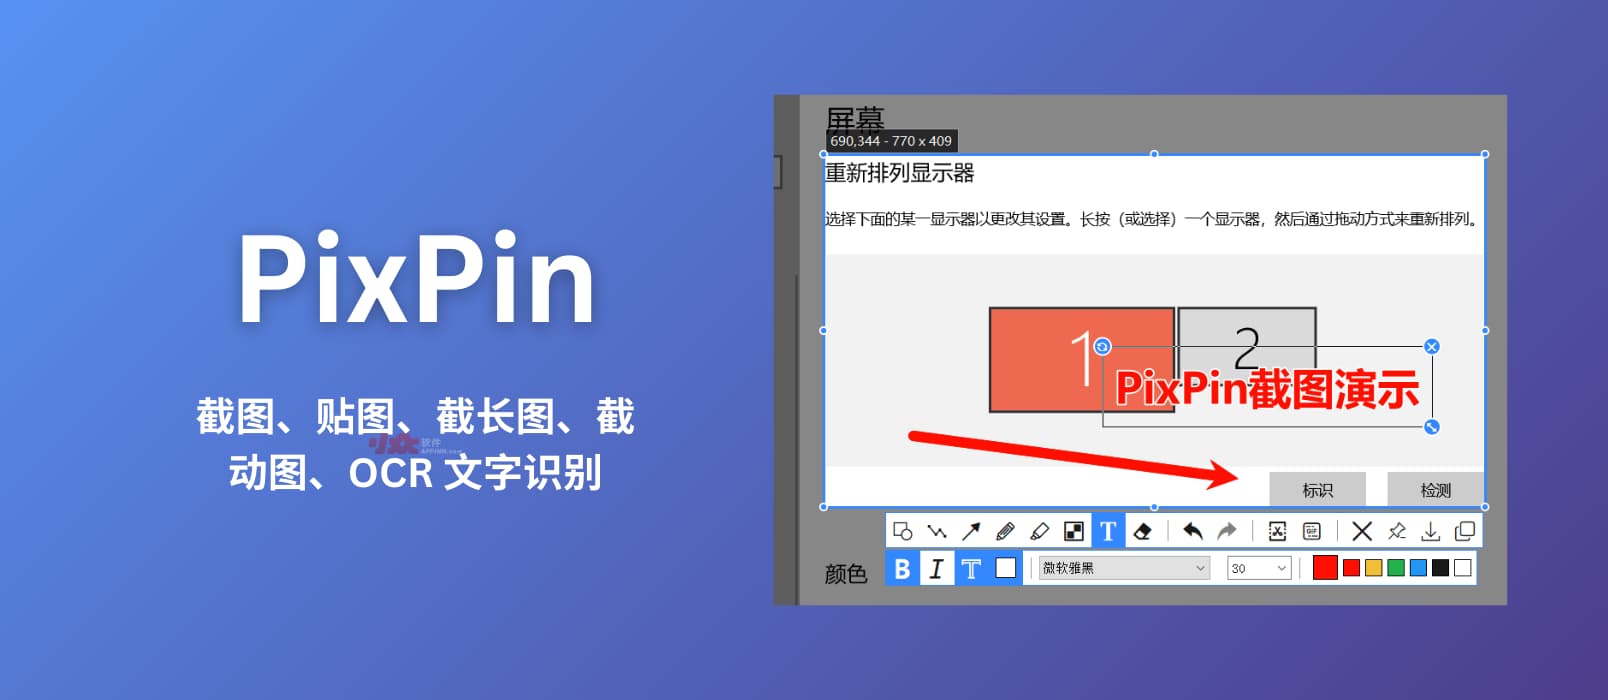 PixPin – 新截图工具：贴图、截长图、截动图、OCR 文字识别[Windows]